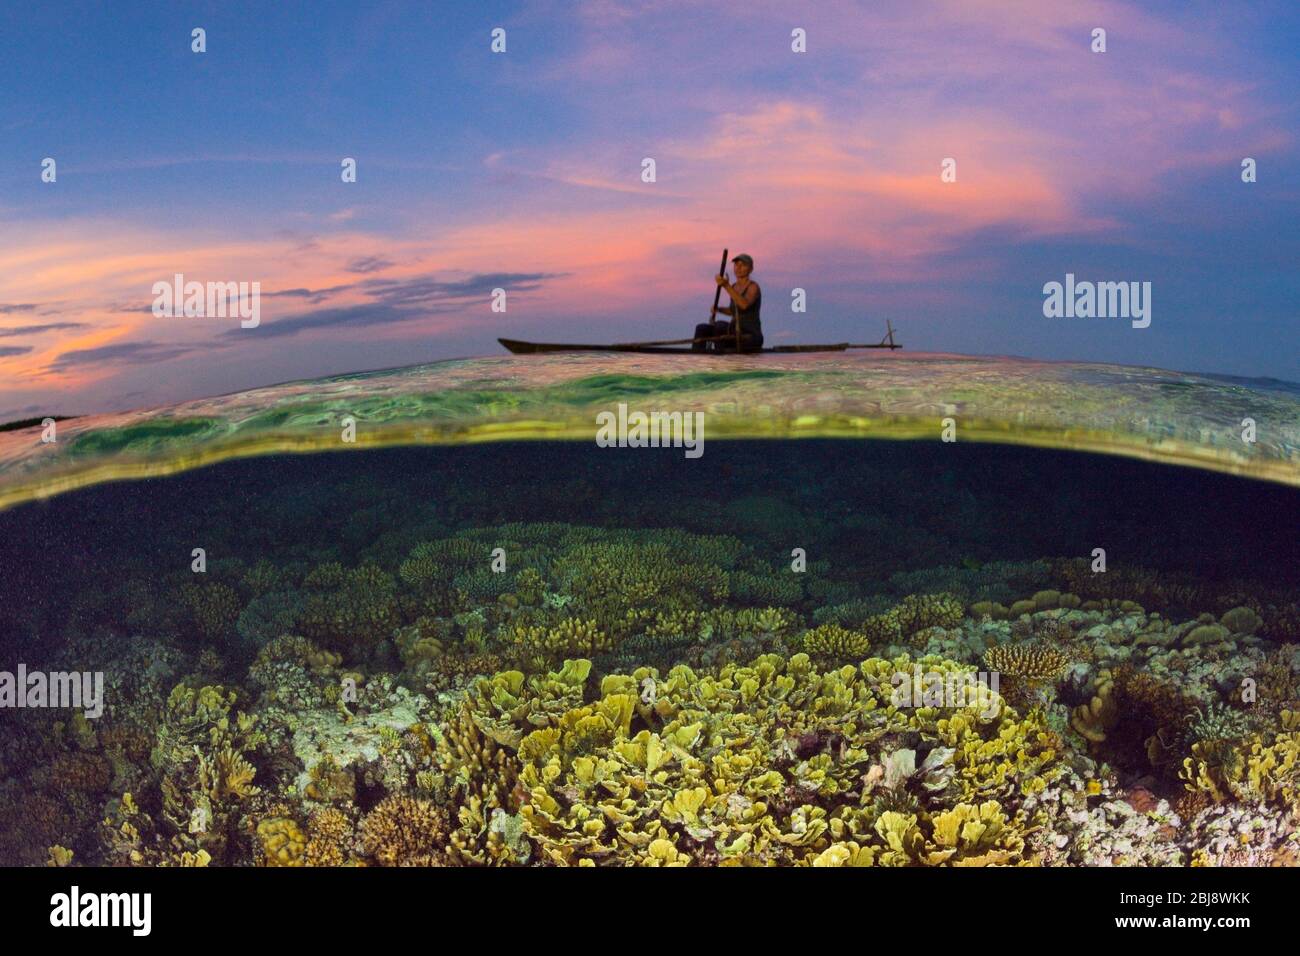 Corail Reef au Sunset, Nouvelle Irlande, Papouasie-Nouvelle-Guinée Banque D'Images